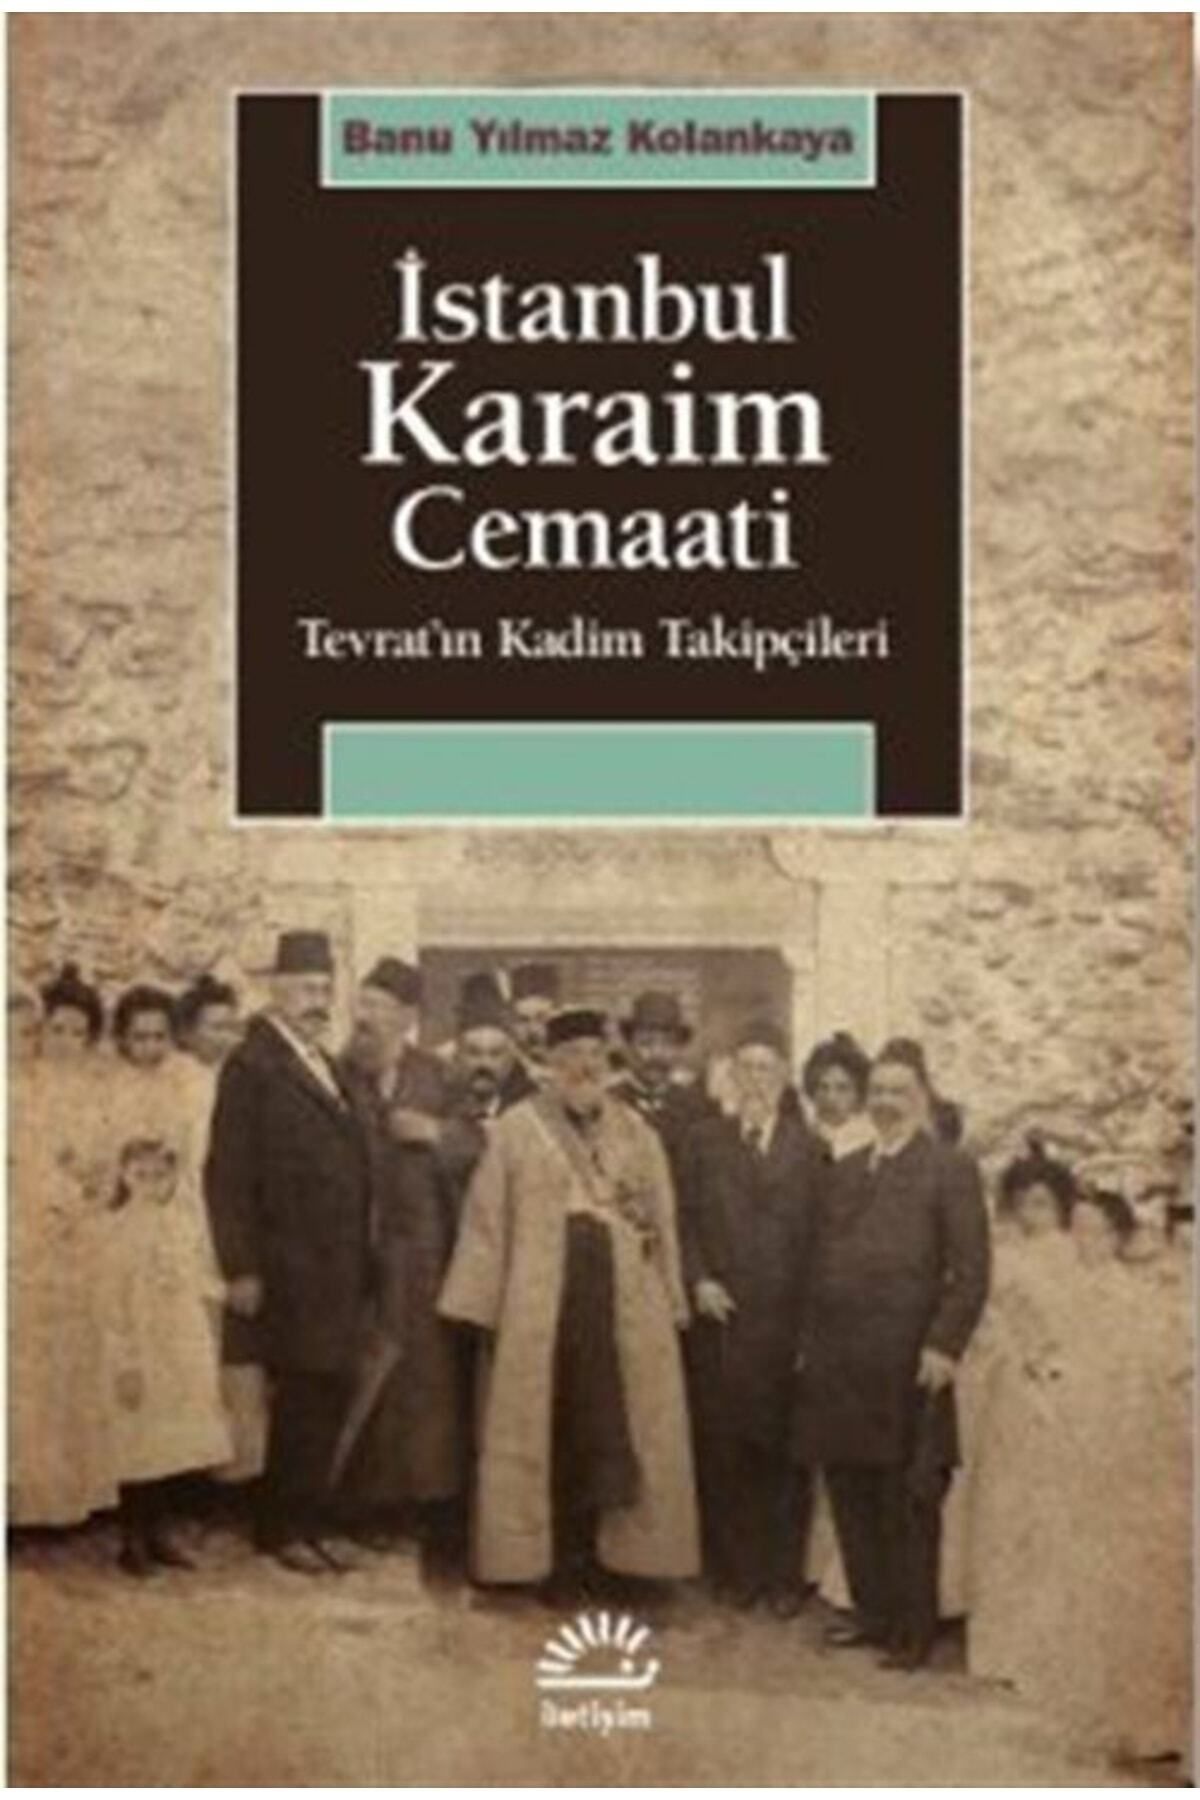 İletişim Yayınları Istanbul Karaim Cemaati & Tevrat'ın Kadim Takipçileri